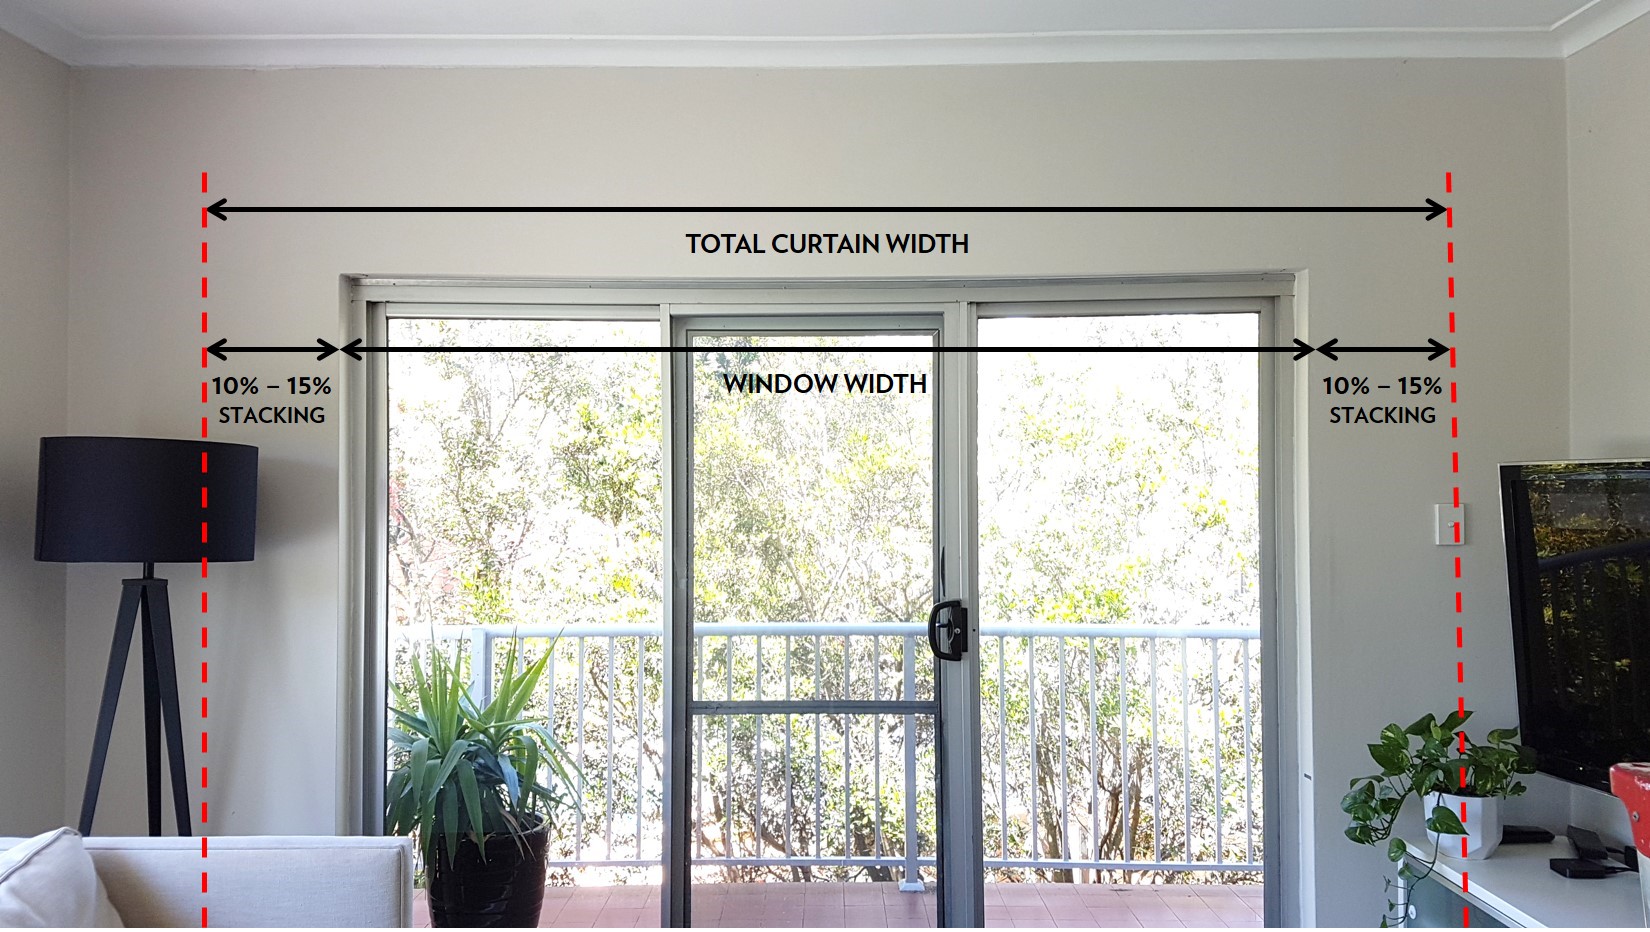 Curtain-width